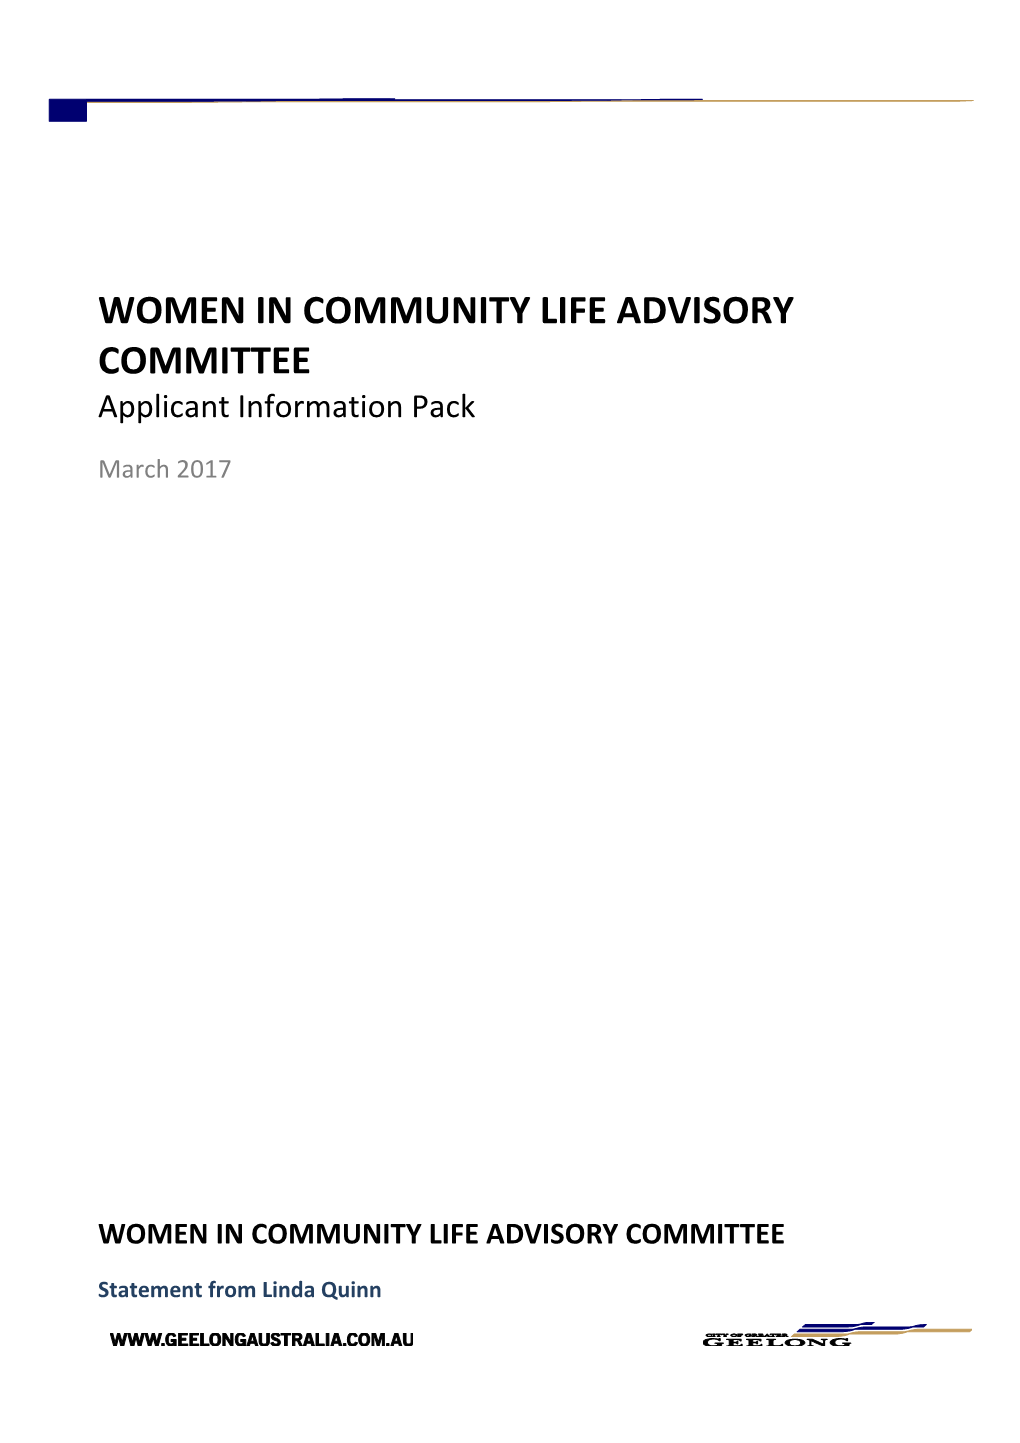 Women in Community Life Advisory Committee